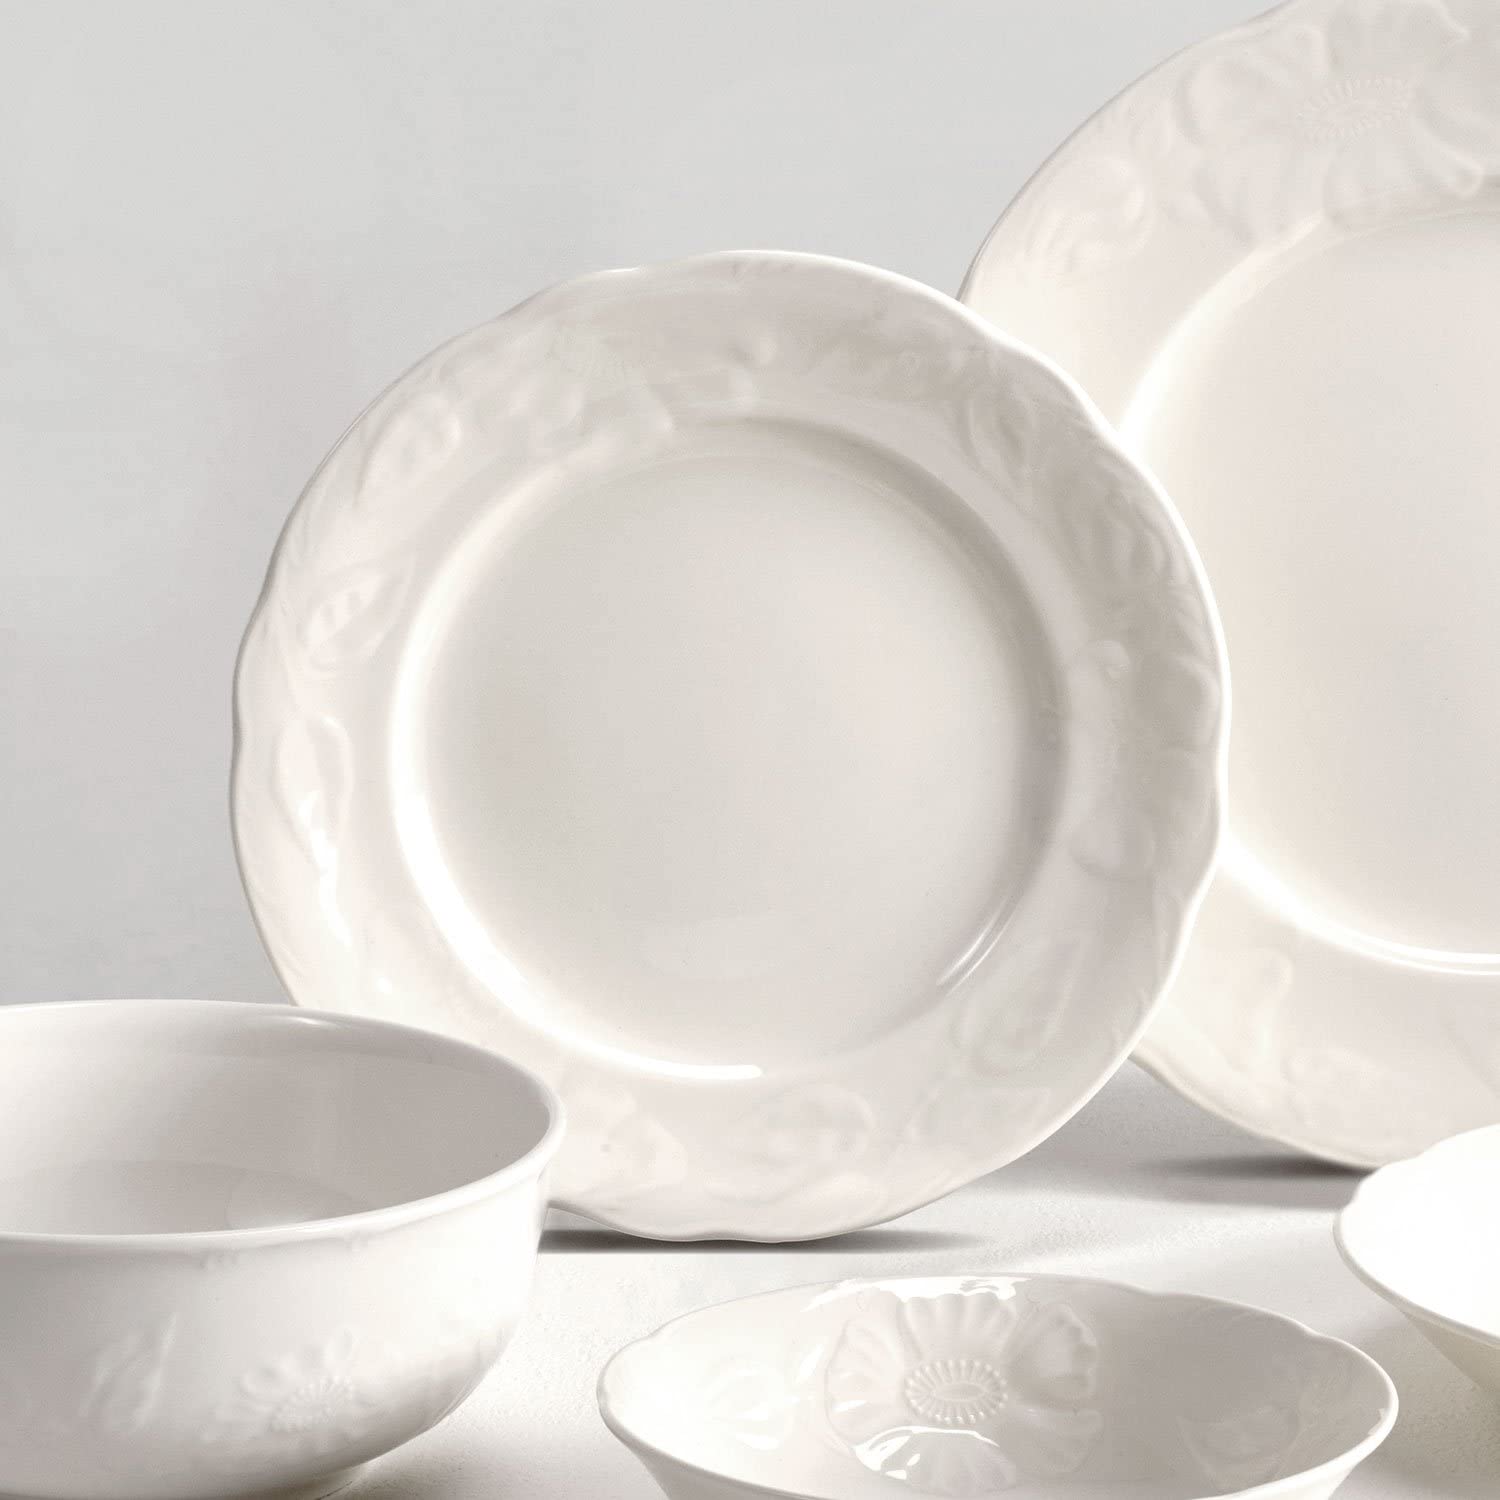 Villeroy & Boch Villeroy und Boch Rose Sauvage Blanche 21 cm Premium Porcelain Breakfast Plate, White